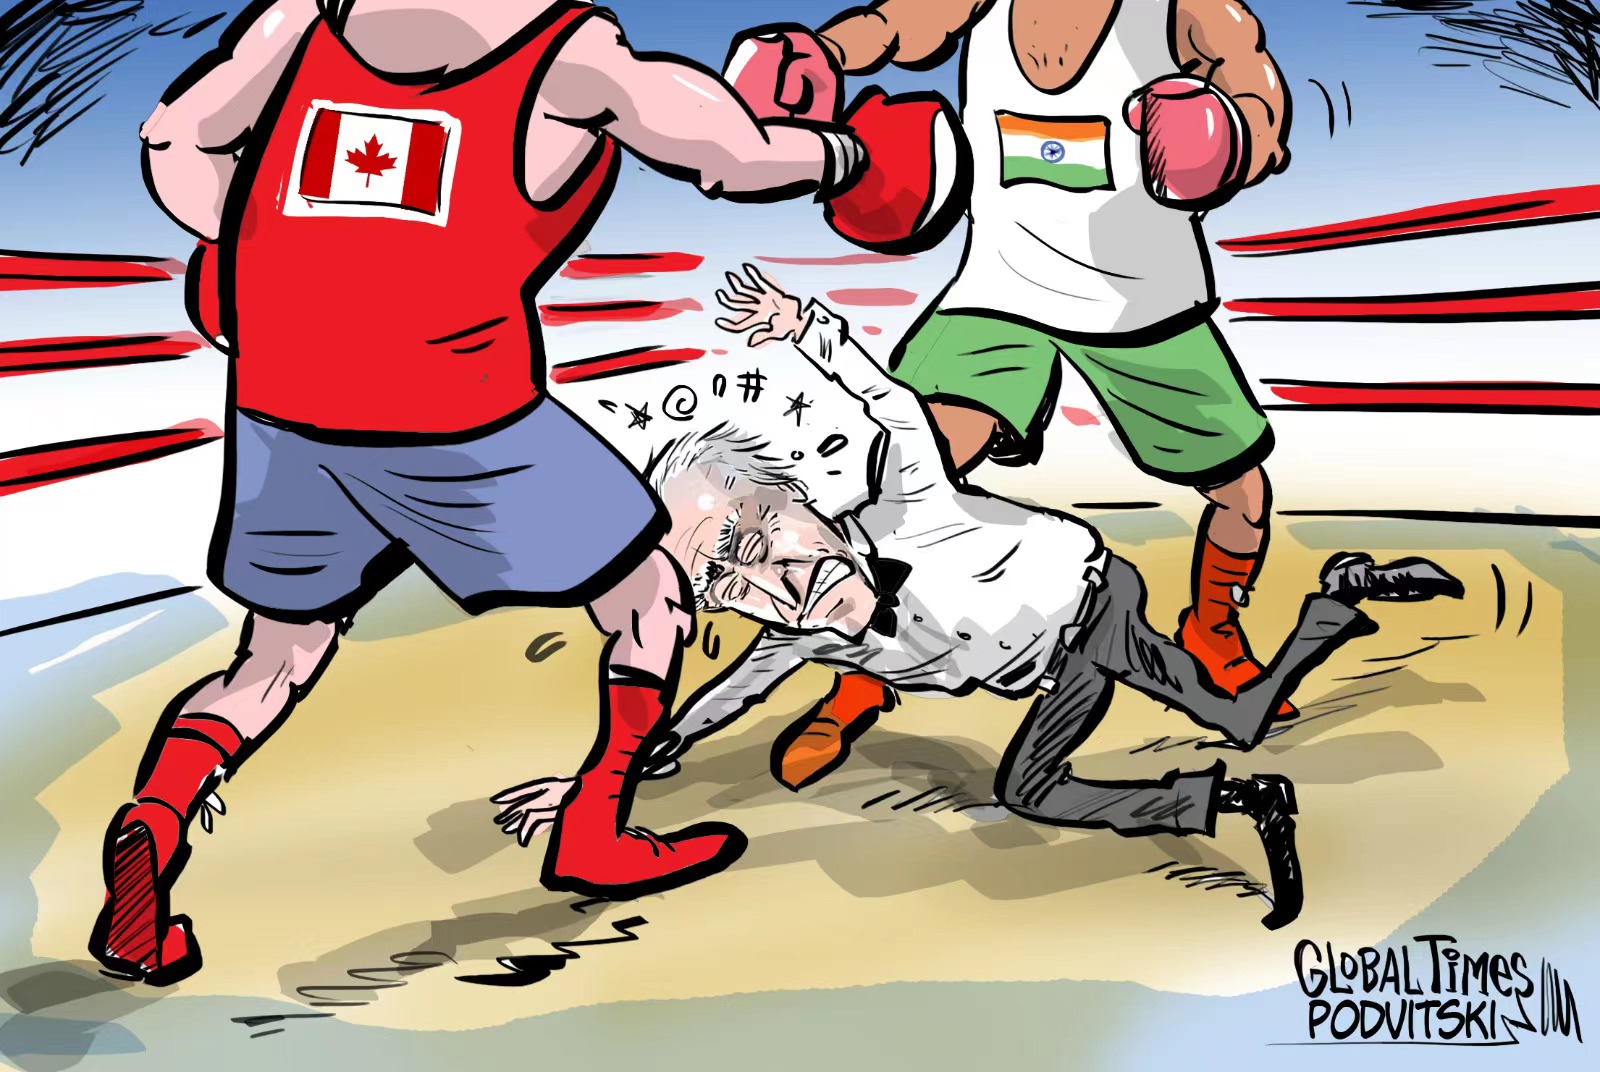 The US is caught in the Canada-India diplomatic row. Cartoon: Vitaly Podvitski